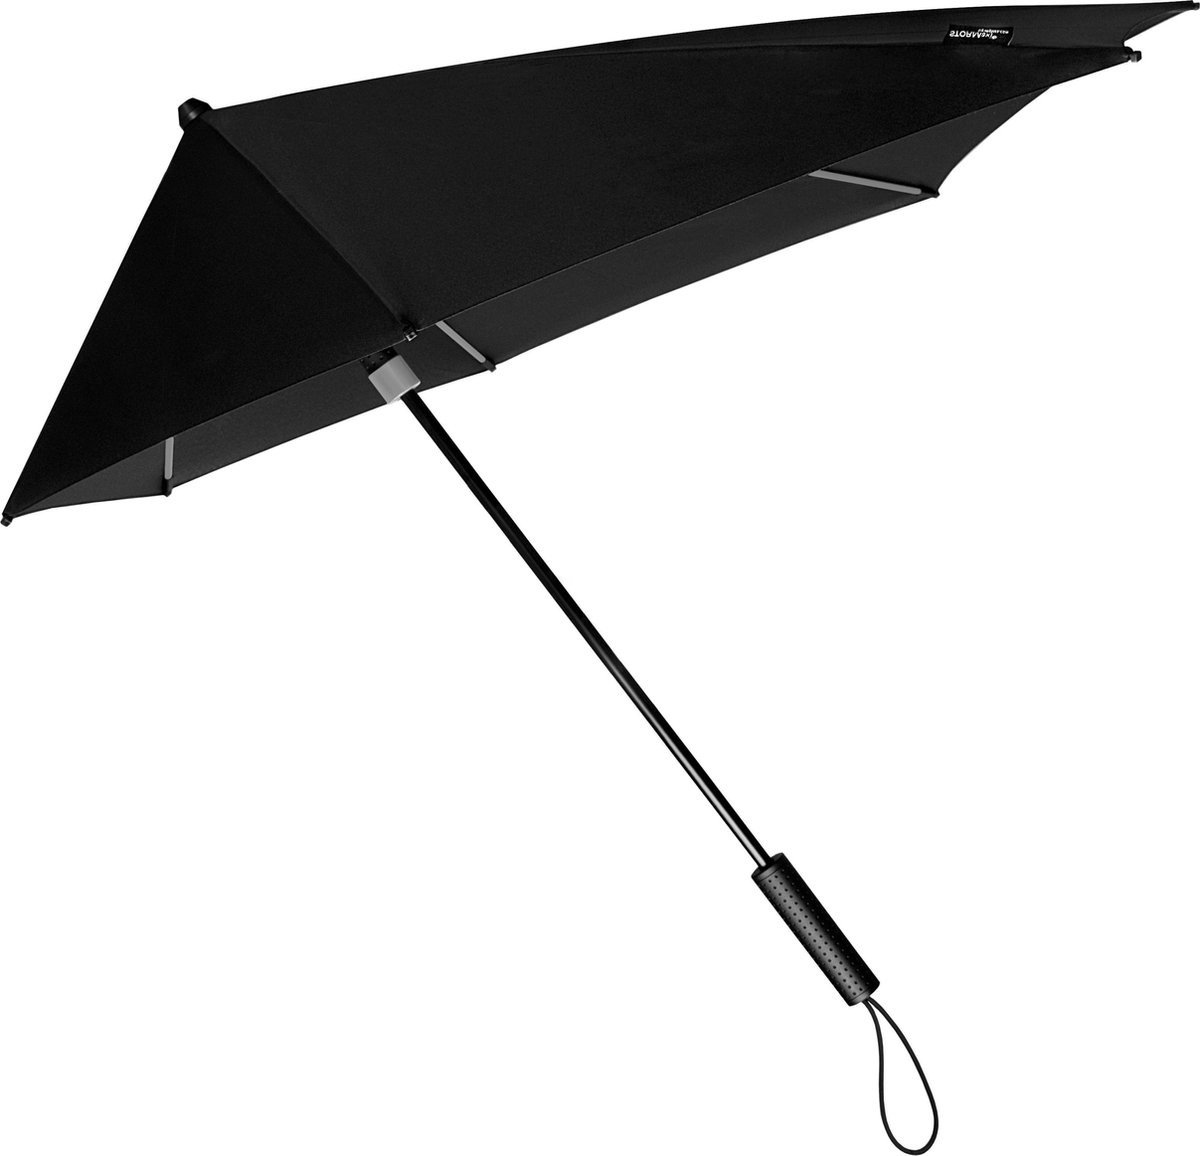 Toegepast Chronisch Loodgieter Stormparaplu - Antistorm paraplu - Stormparaplu - STORMaxi SPECIAL EDITION  Zwart +... | bol.com